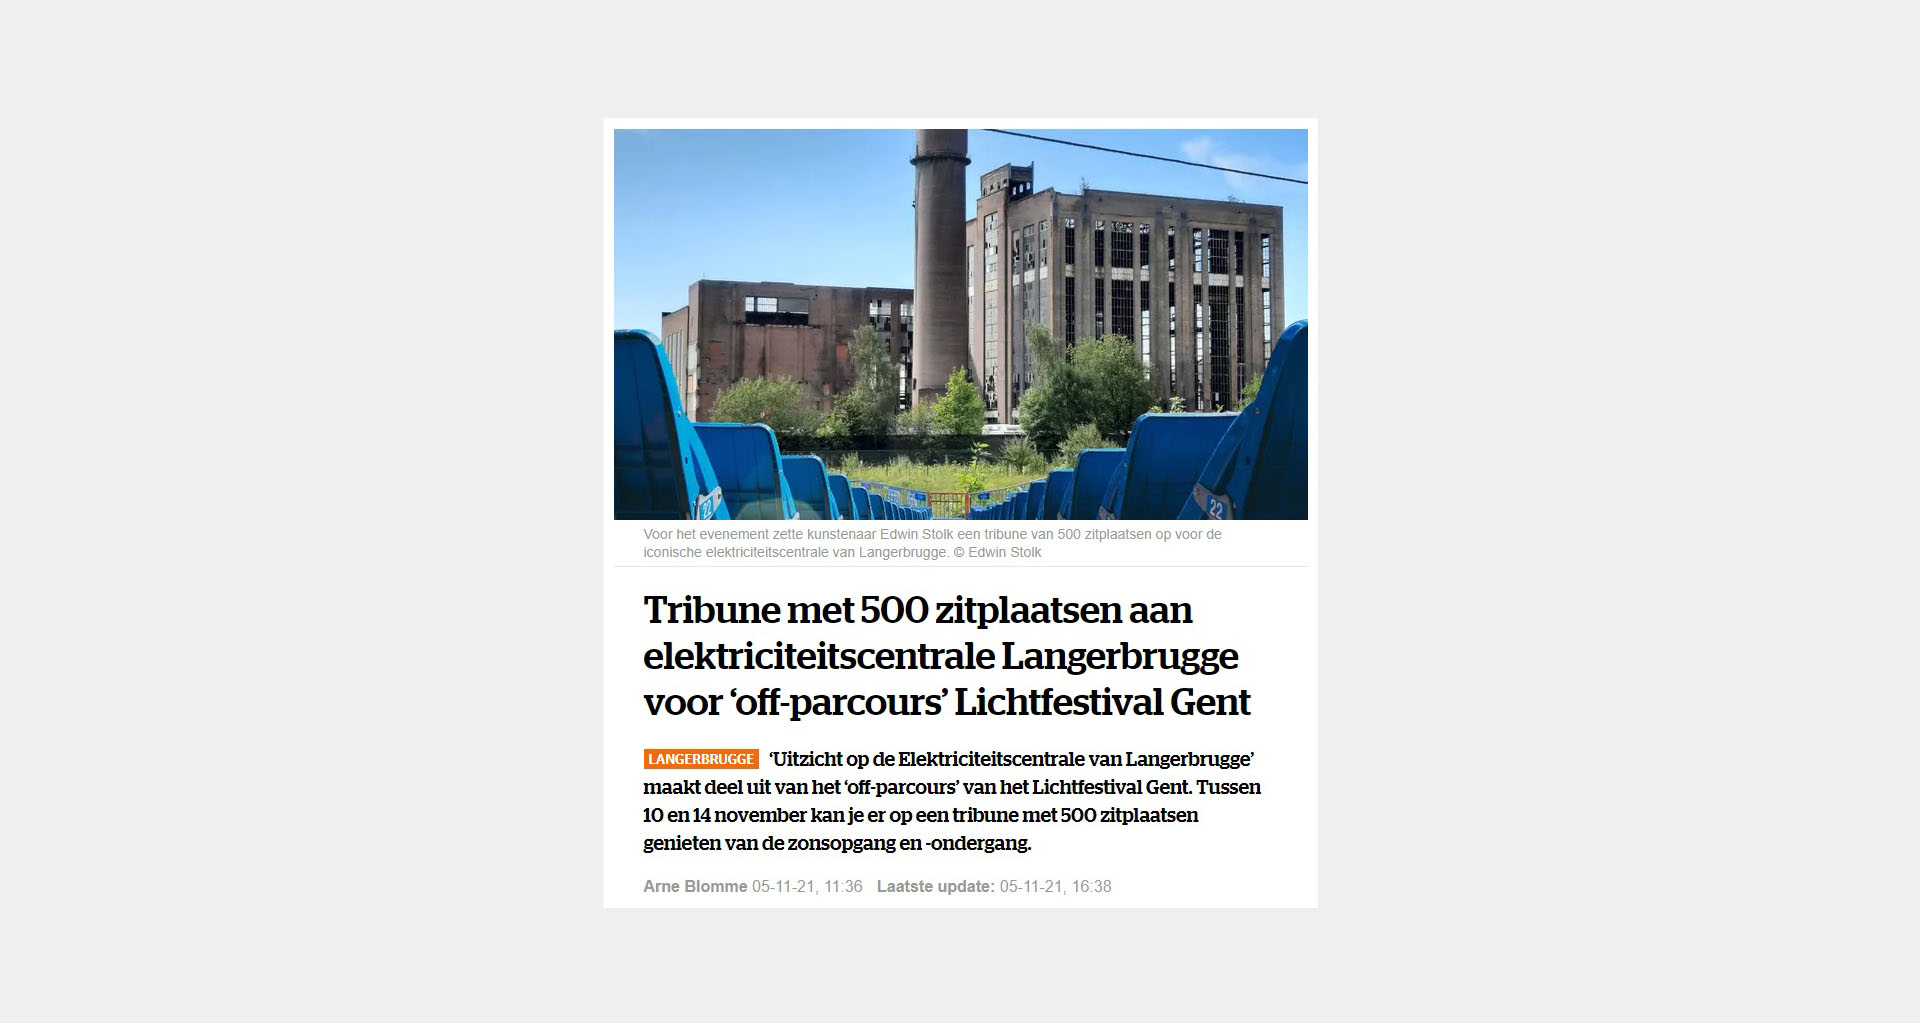 Het Laatste Nieuws: Tribune met 500 zitplaatsen aan elektriciteitscentrale Langerbrugge